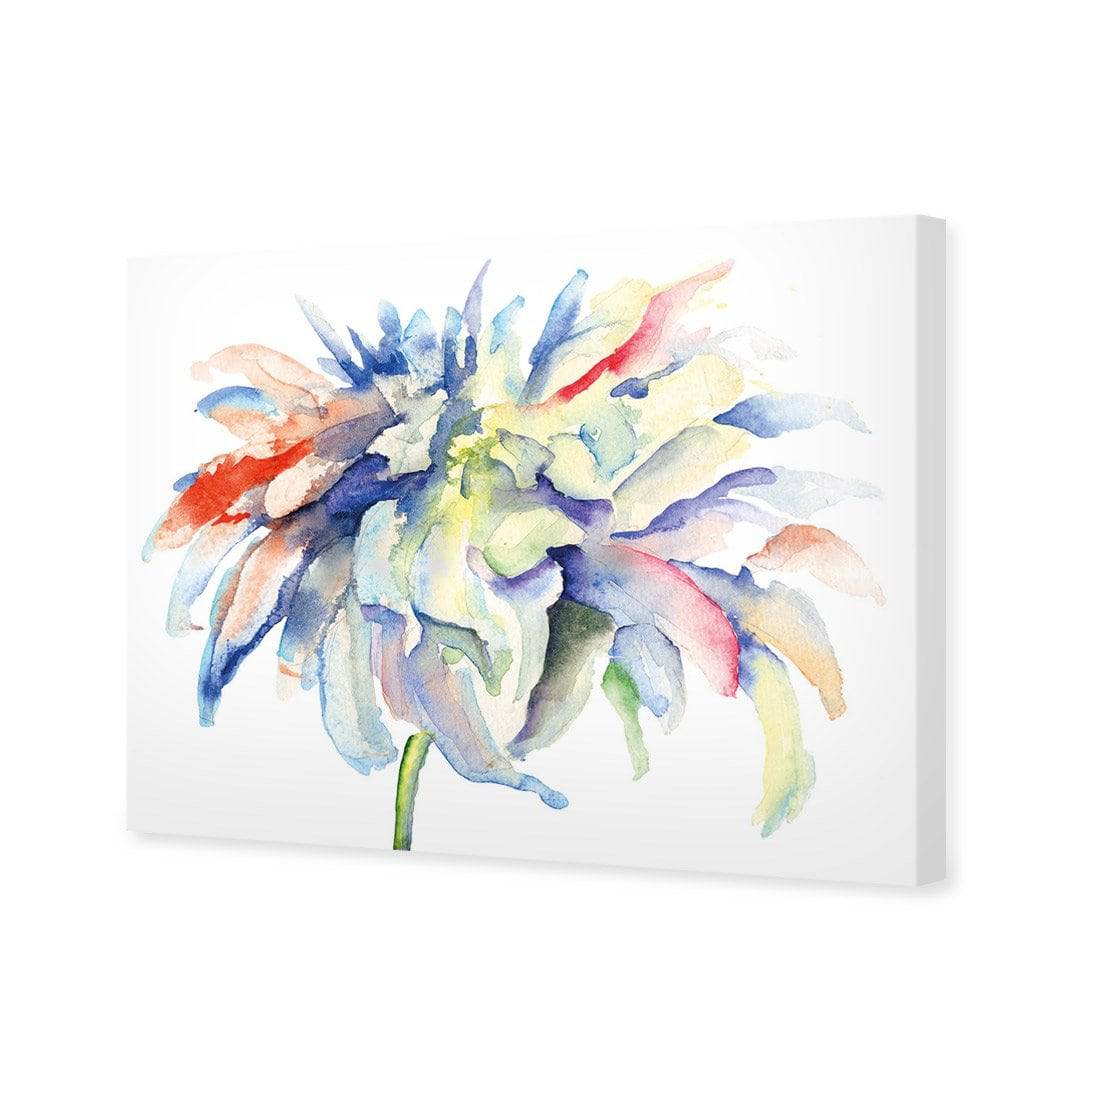 Fairy Floss Canvas Art-Canvas-Wall Art Designs-45x30cm-Canvas - No Frame-Wall Art Designs